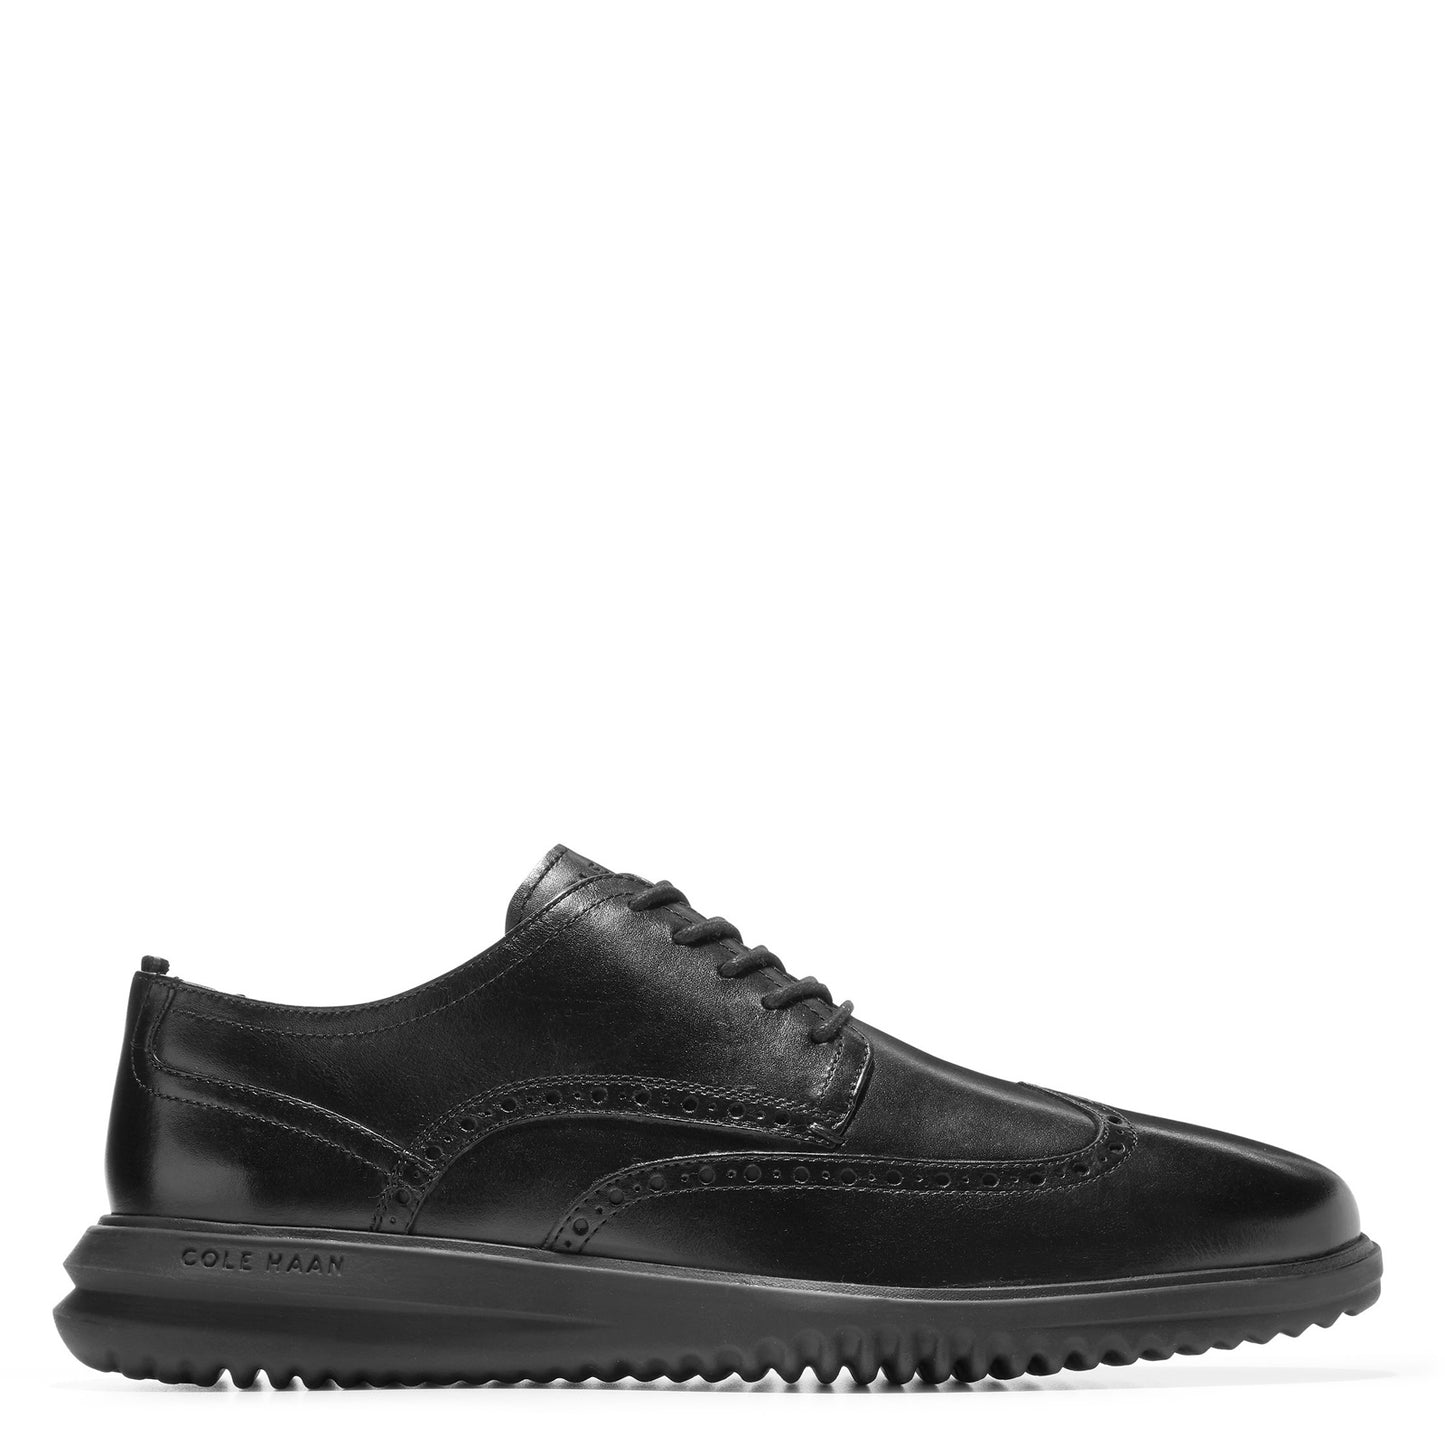 Peltz Shoes  Men's Cole Haan Grand+ Wingtip Oxford Black Black C36938